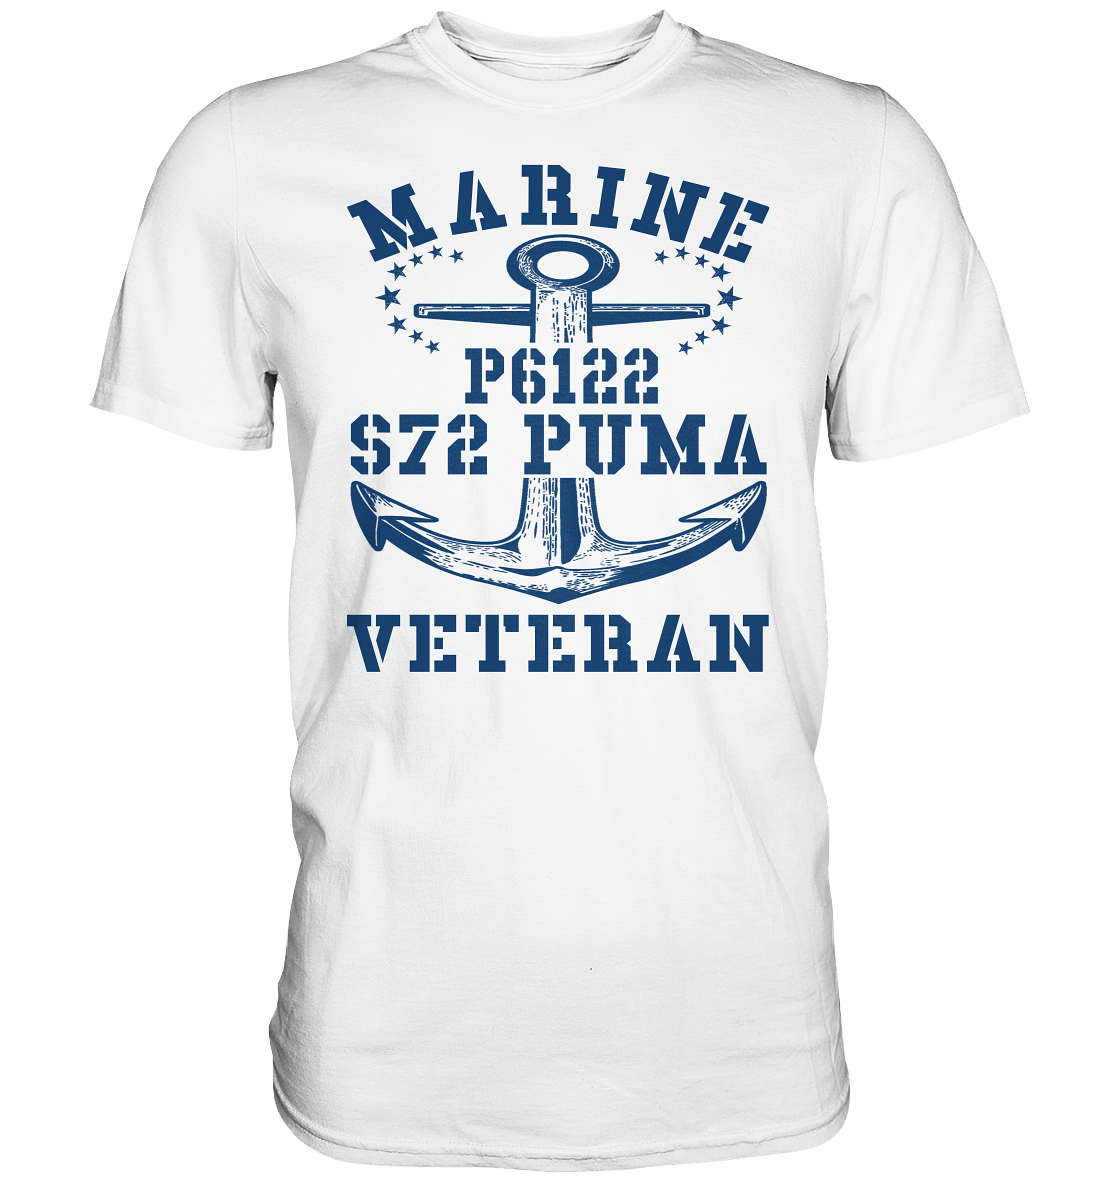 FK-Schnellboot P6122 P.U.M.A. Marine Veteran - Premium Shirt